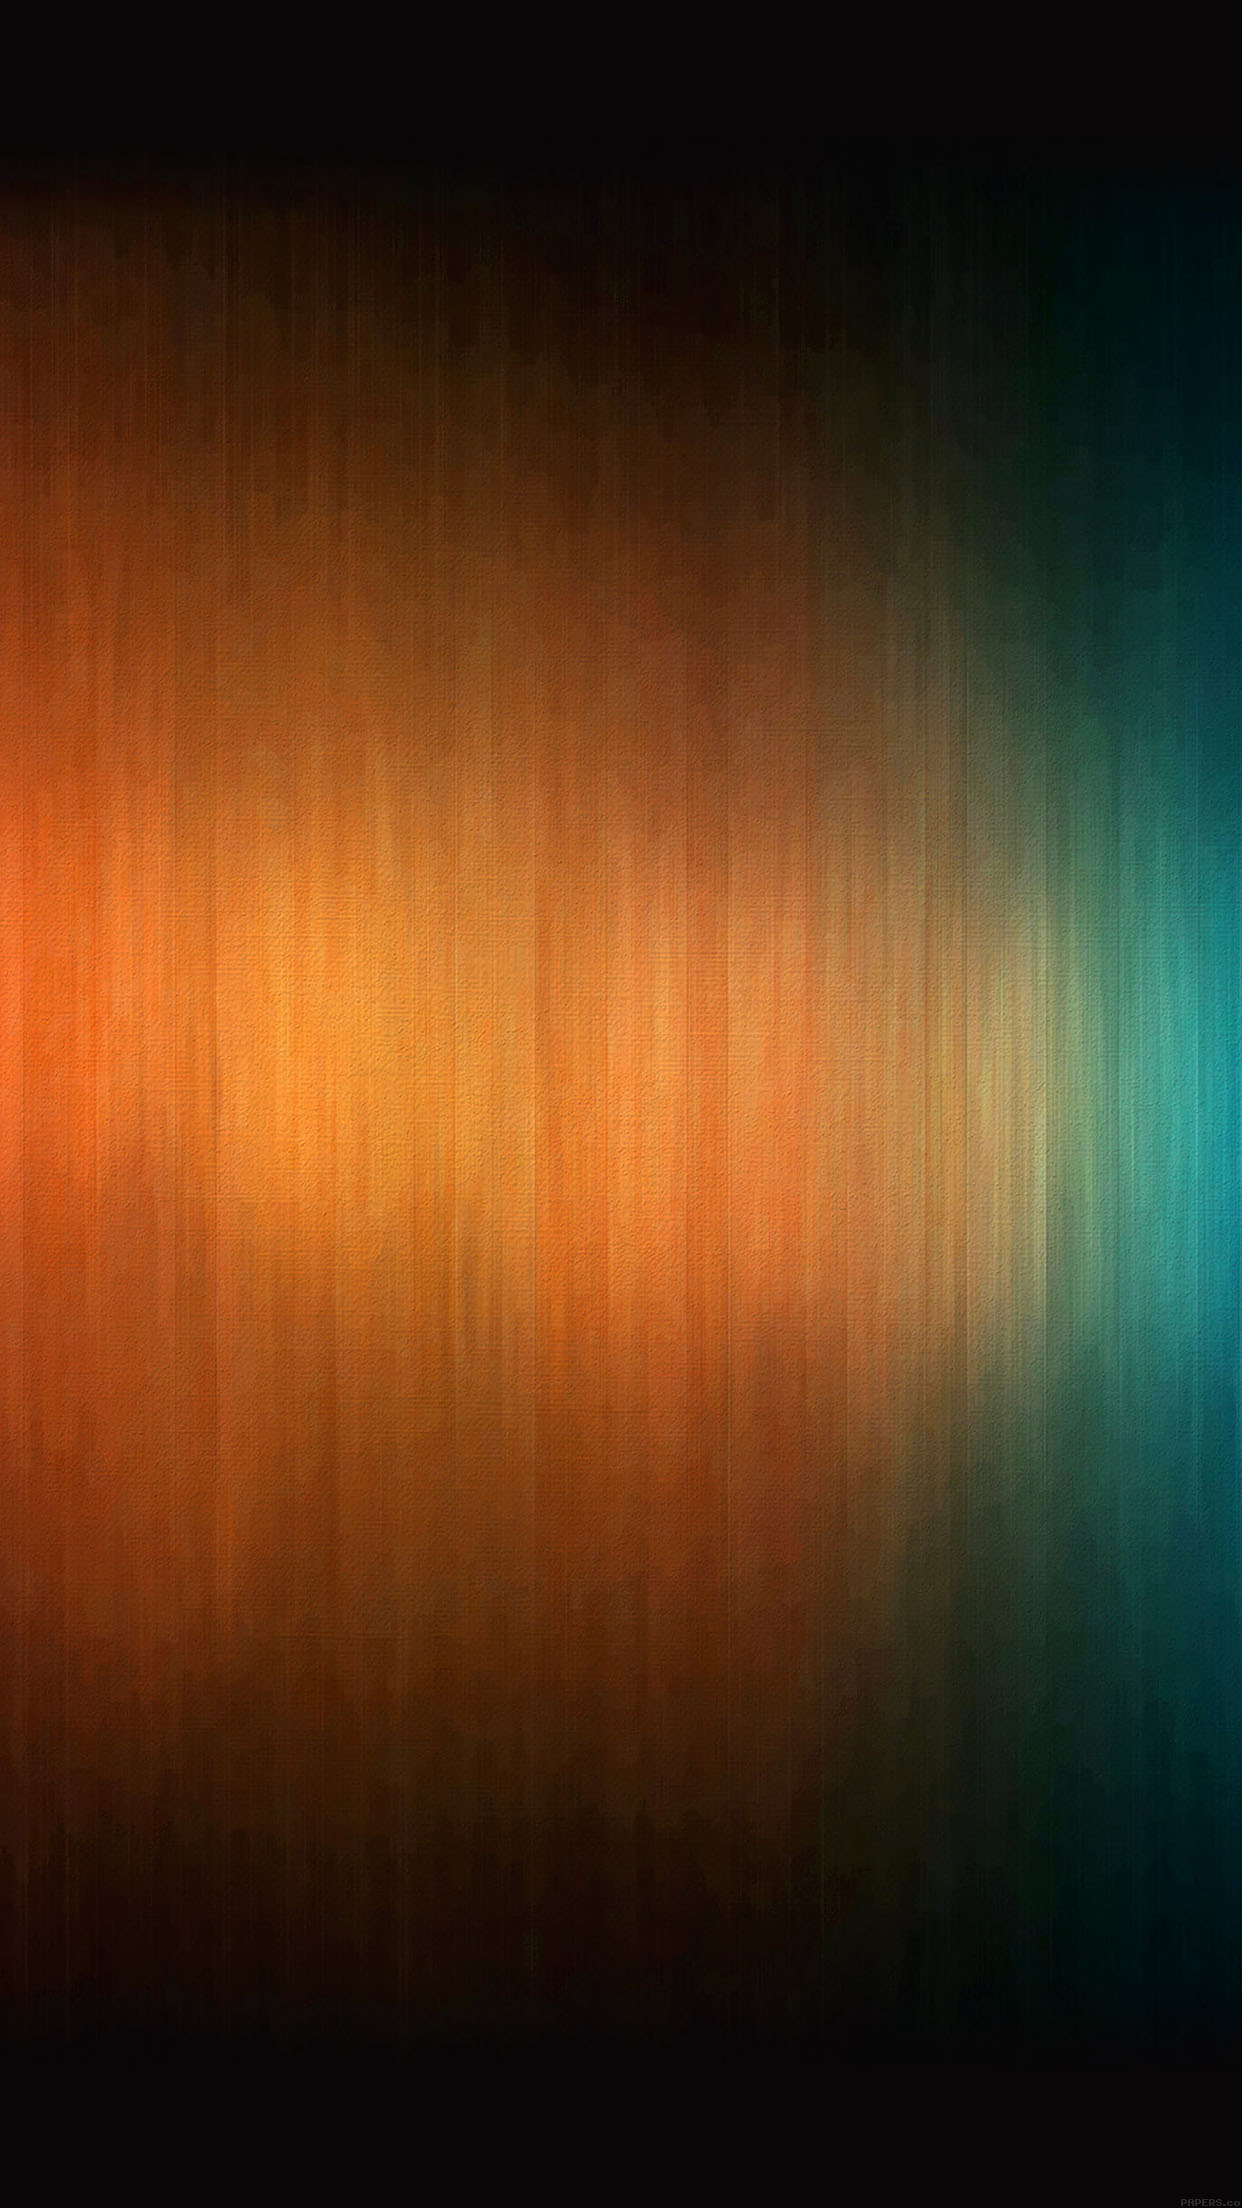 fond d'écran par défaut iphone 6,bleu,ciel,orange,rouge,jaune